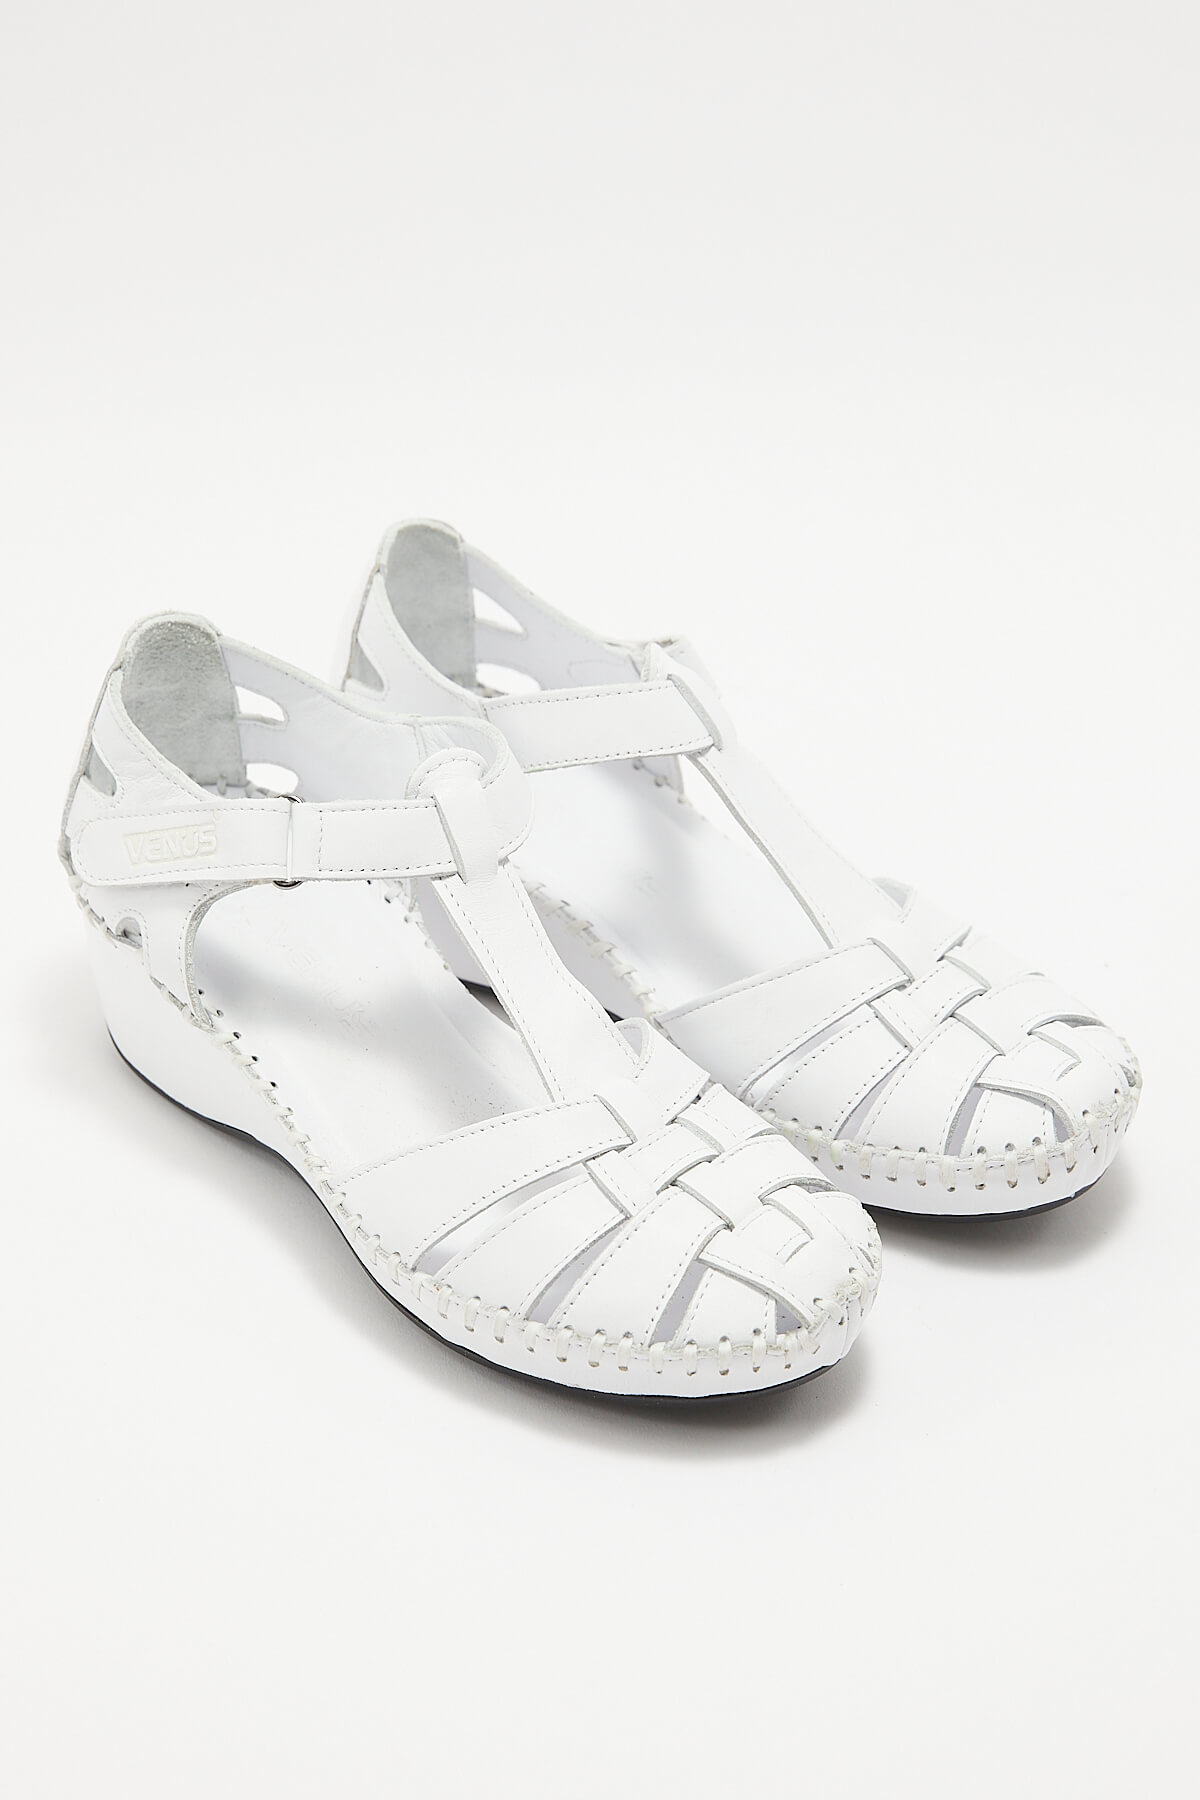 Kadın Comfort Deri Sandalet Beyaz 18791382